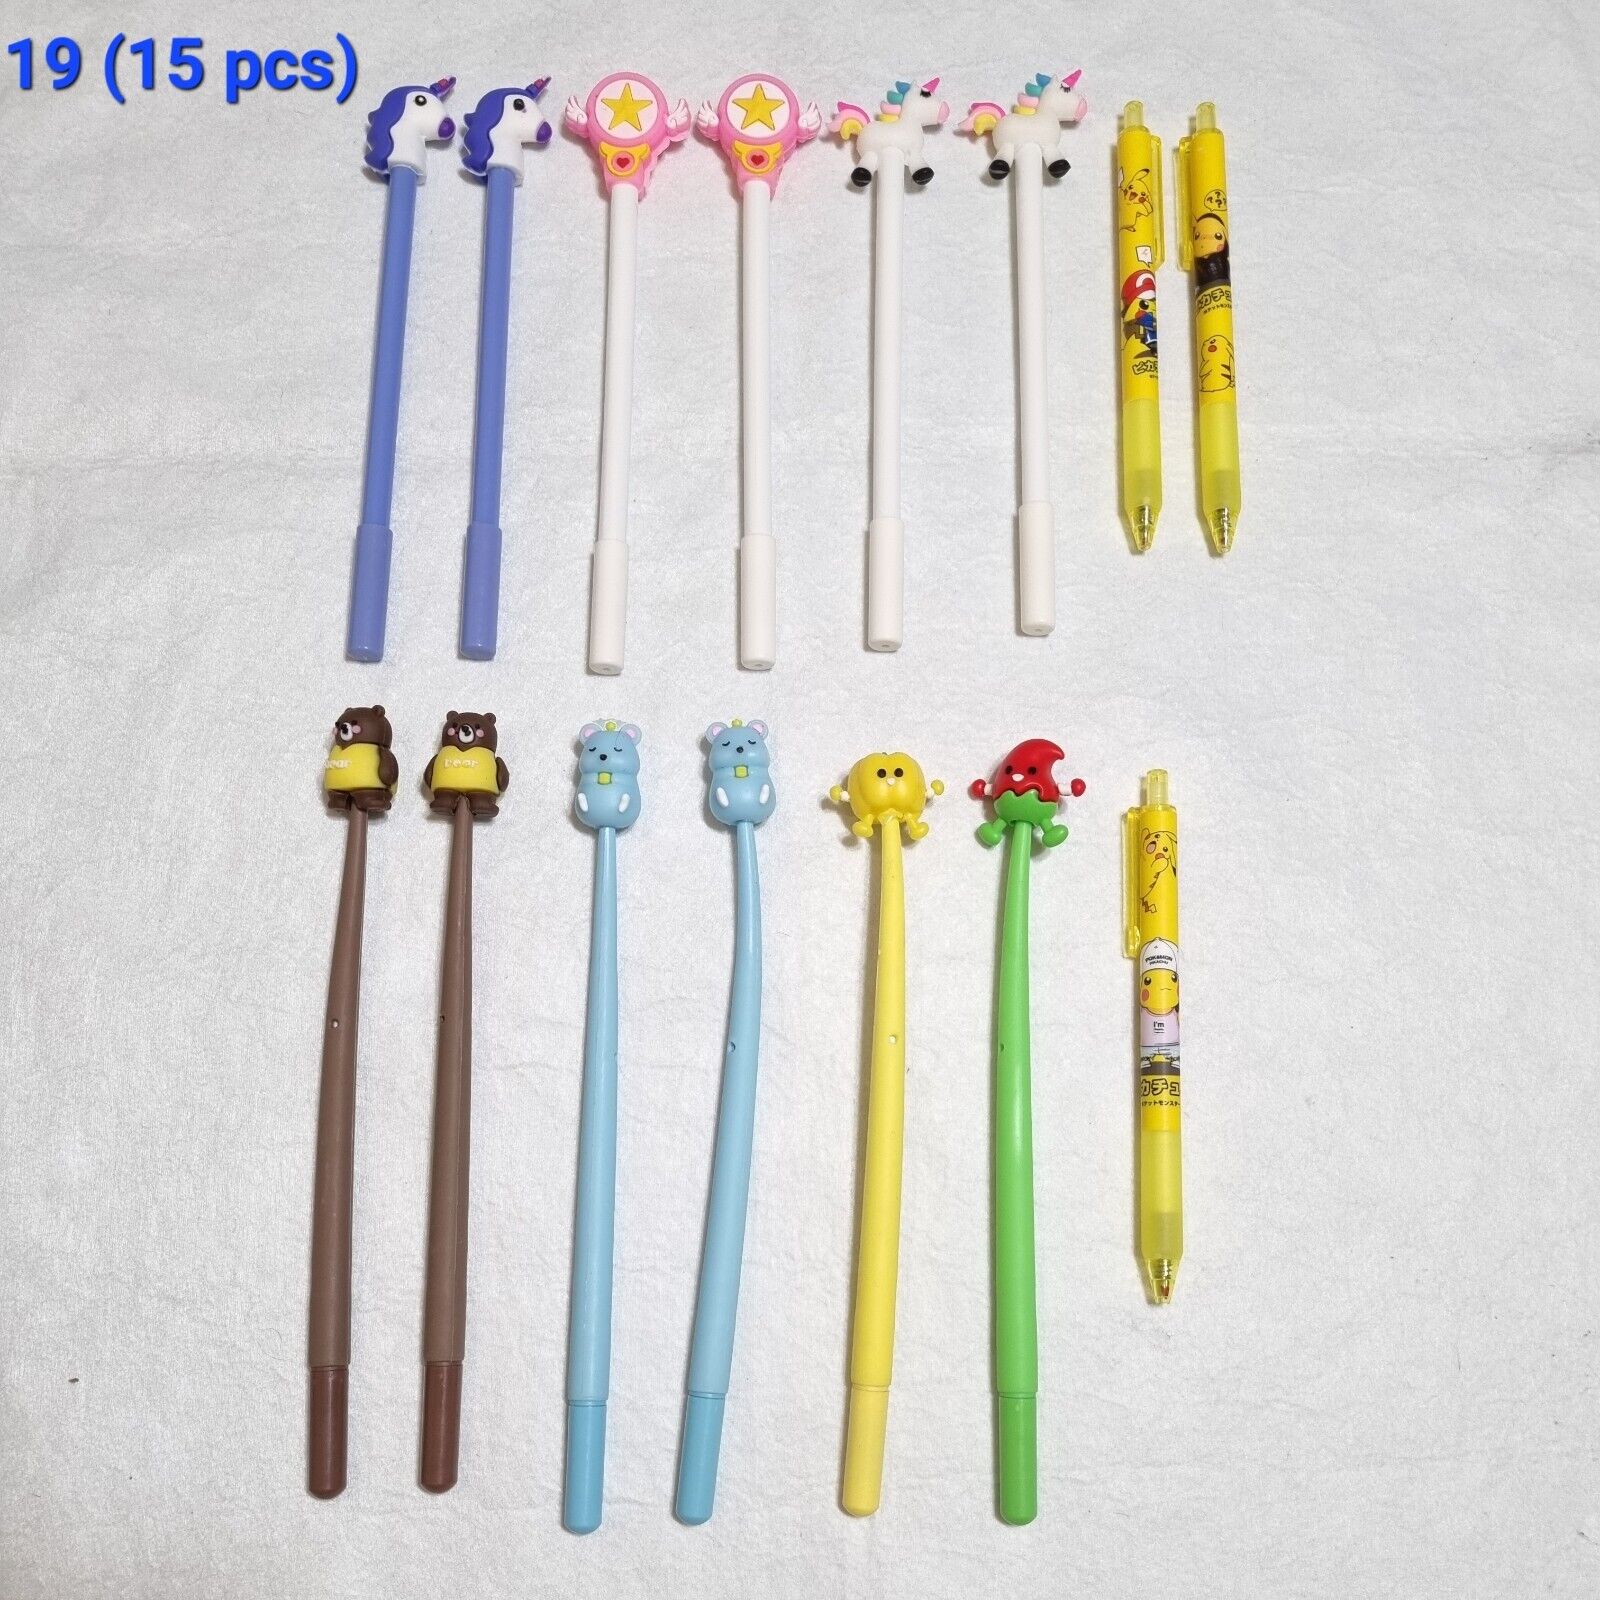 US 25pcs/lot Cute Office School Accessories 0.5mm Pen Gel Pen